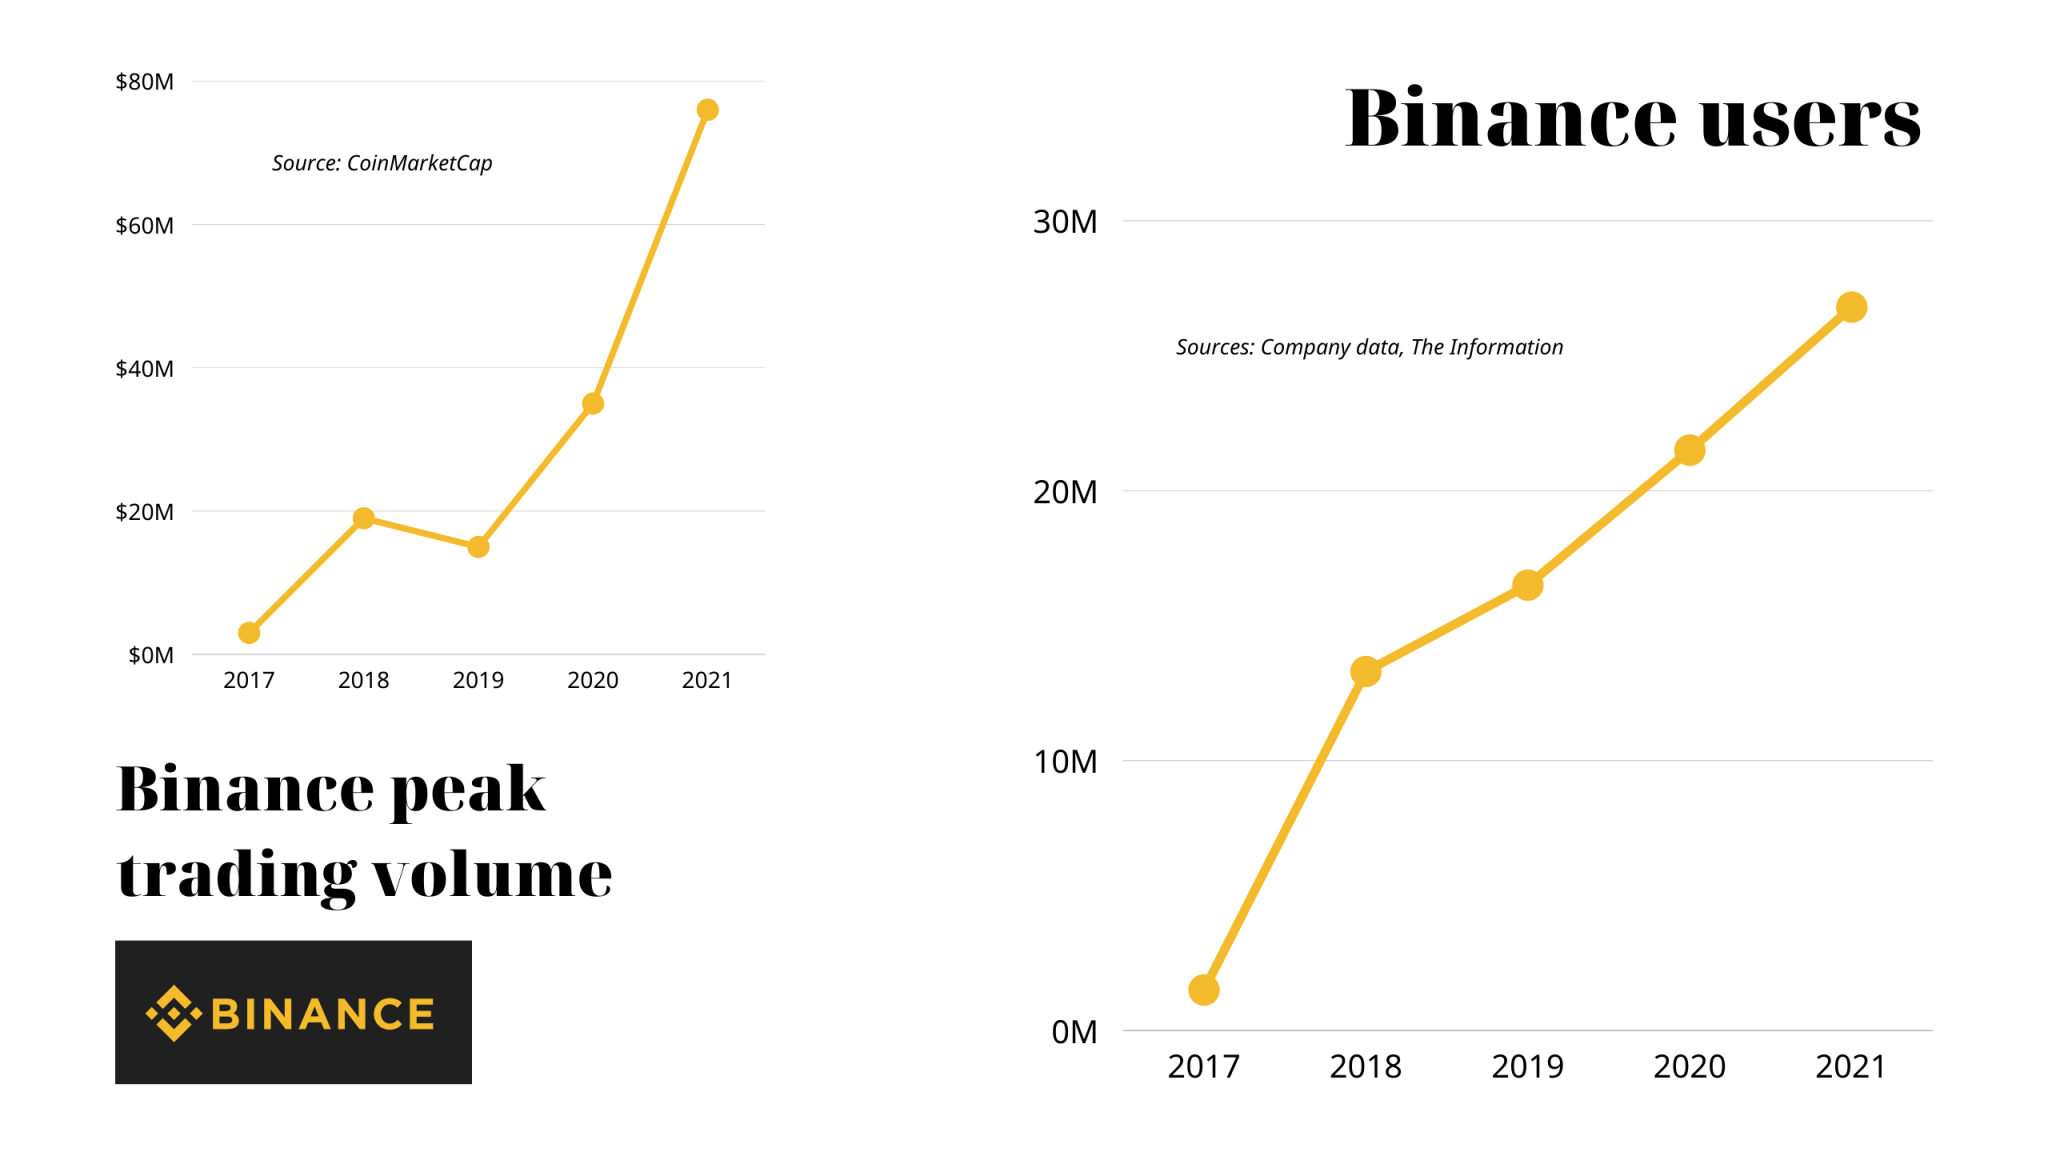 Khối lượng giao dịch và người dùng của Binance từ 2017 đến 2021